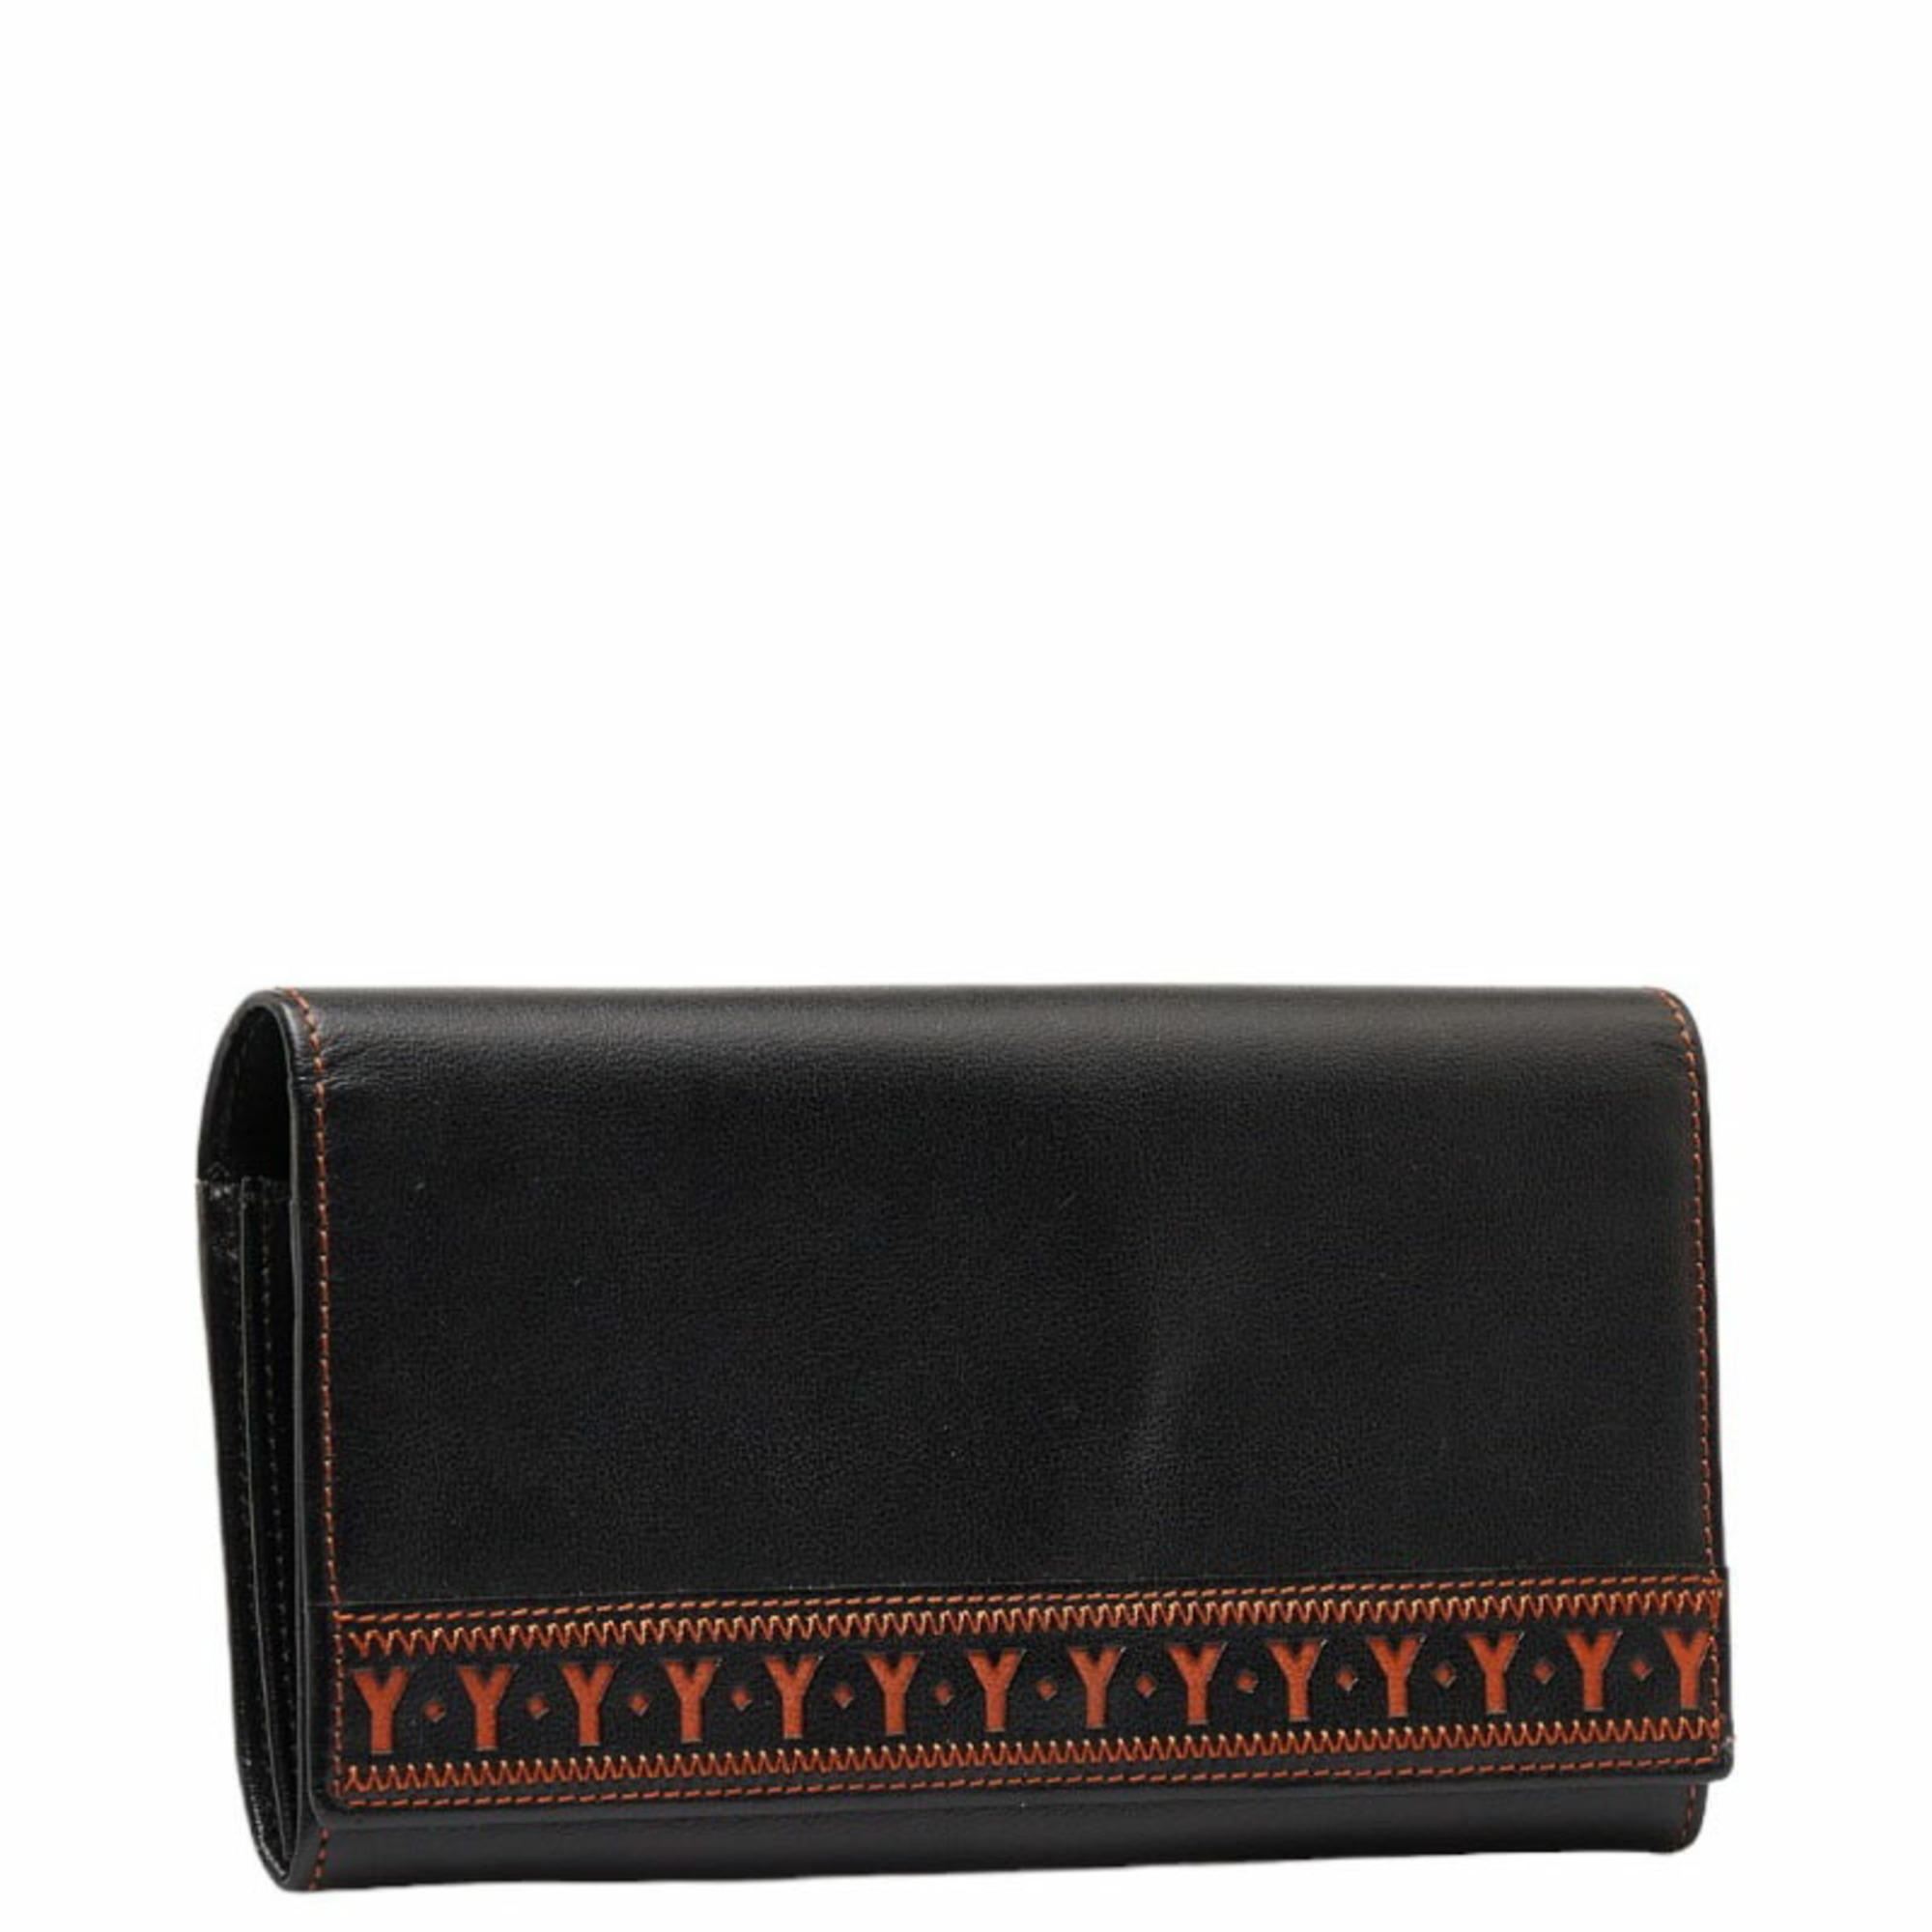 Saint Laurent Y Stitch Long Wallet Black Orange Leather Women's SAINT LAURENT